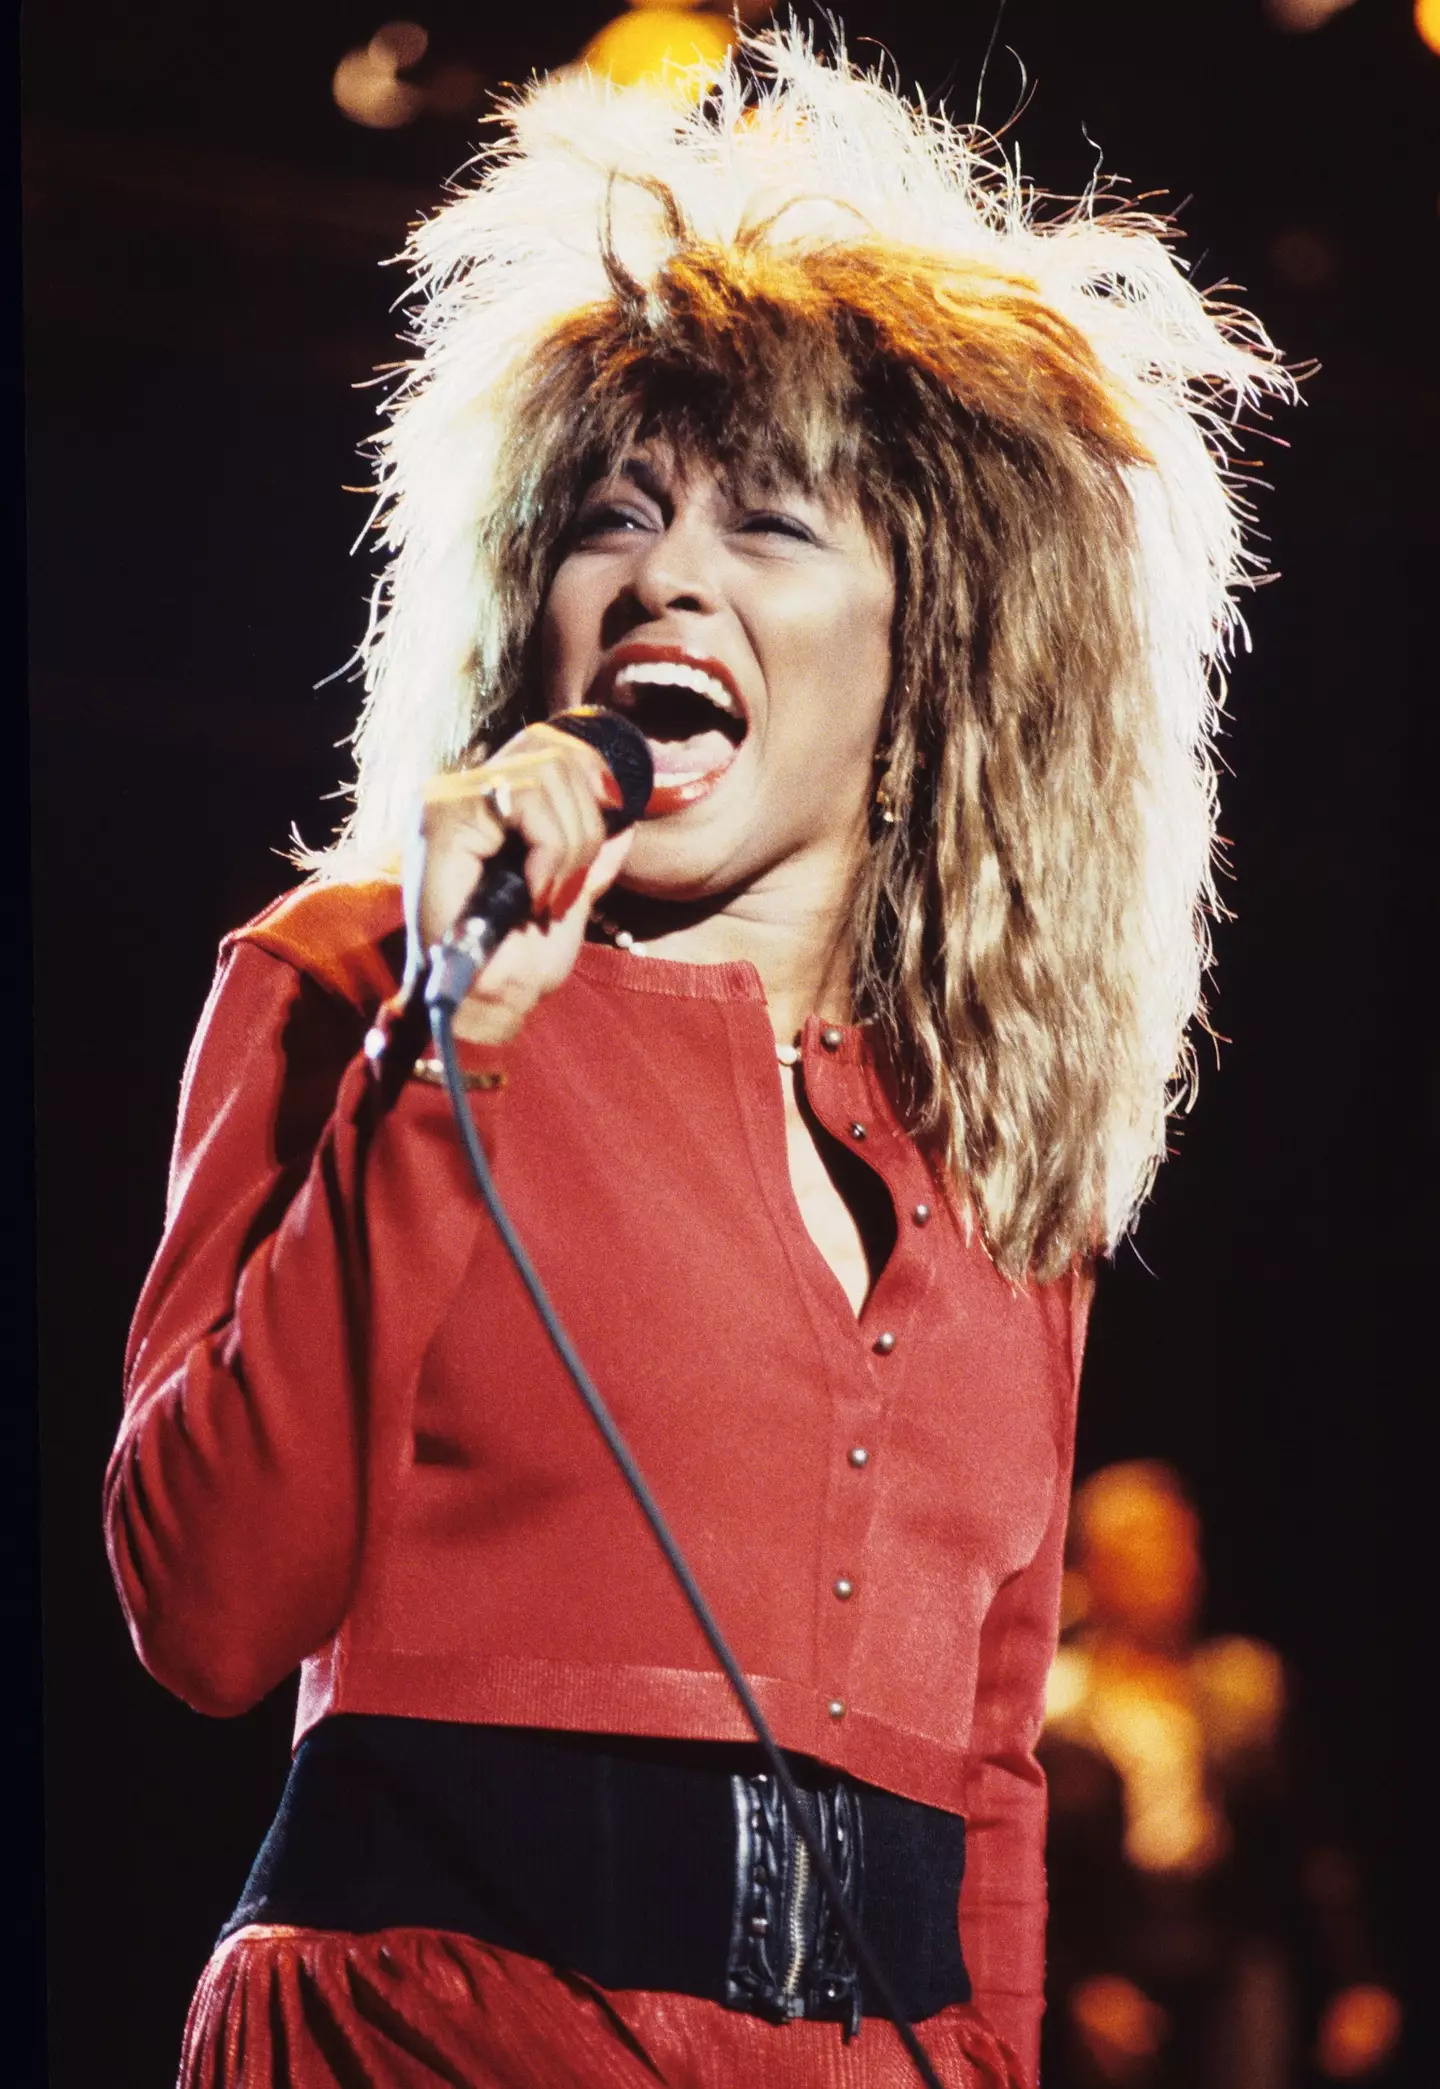 Tina Turner died earlier this week.